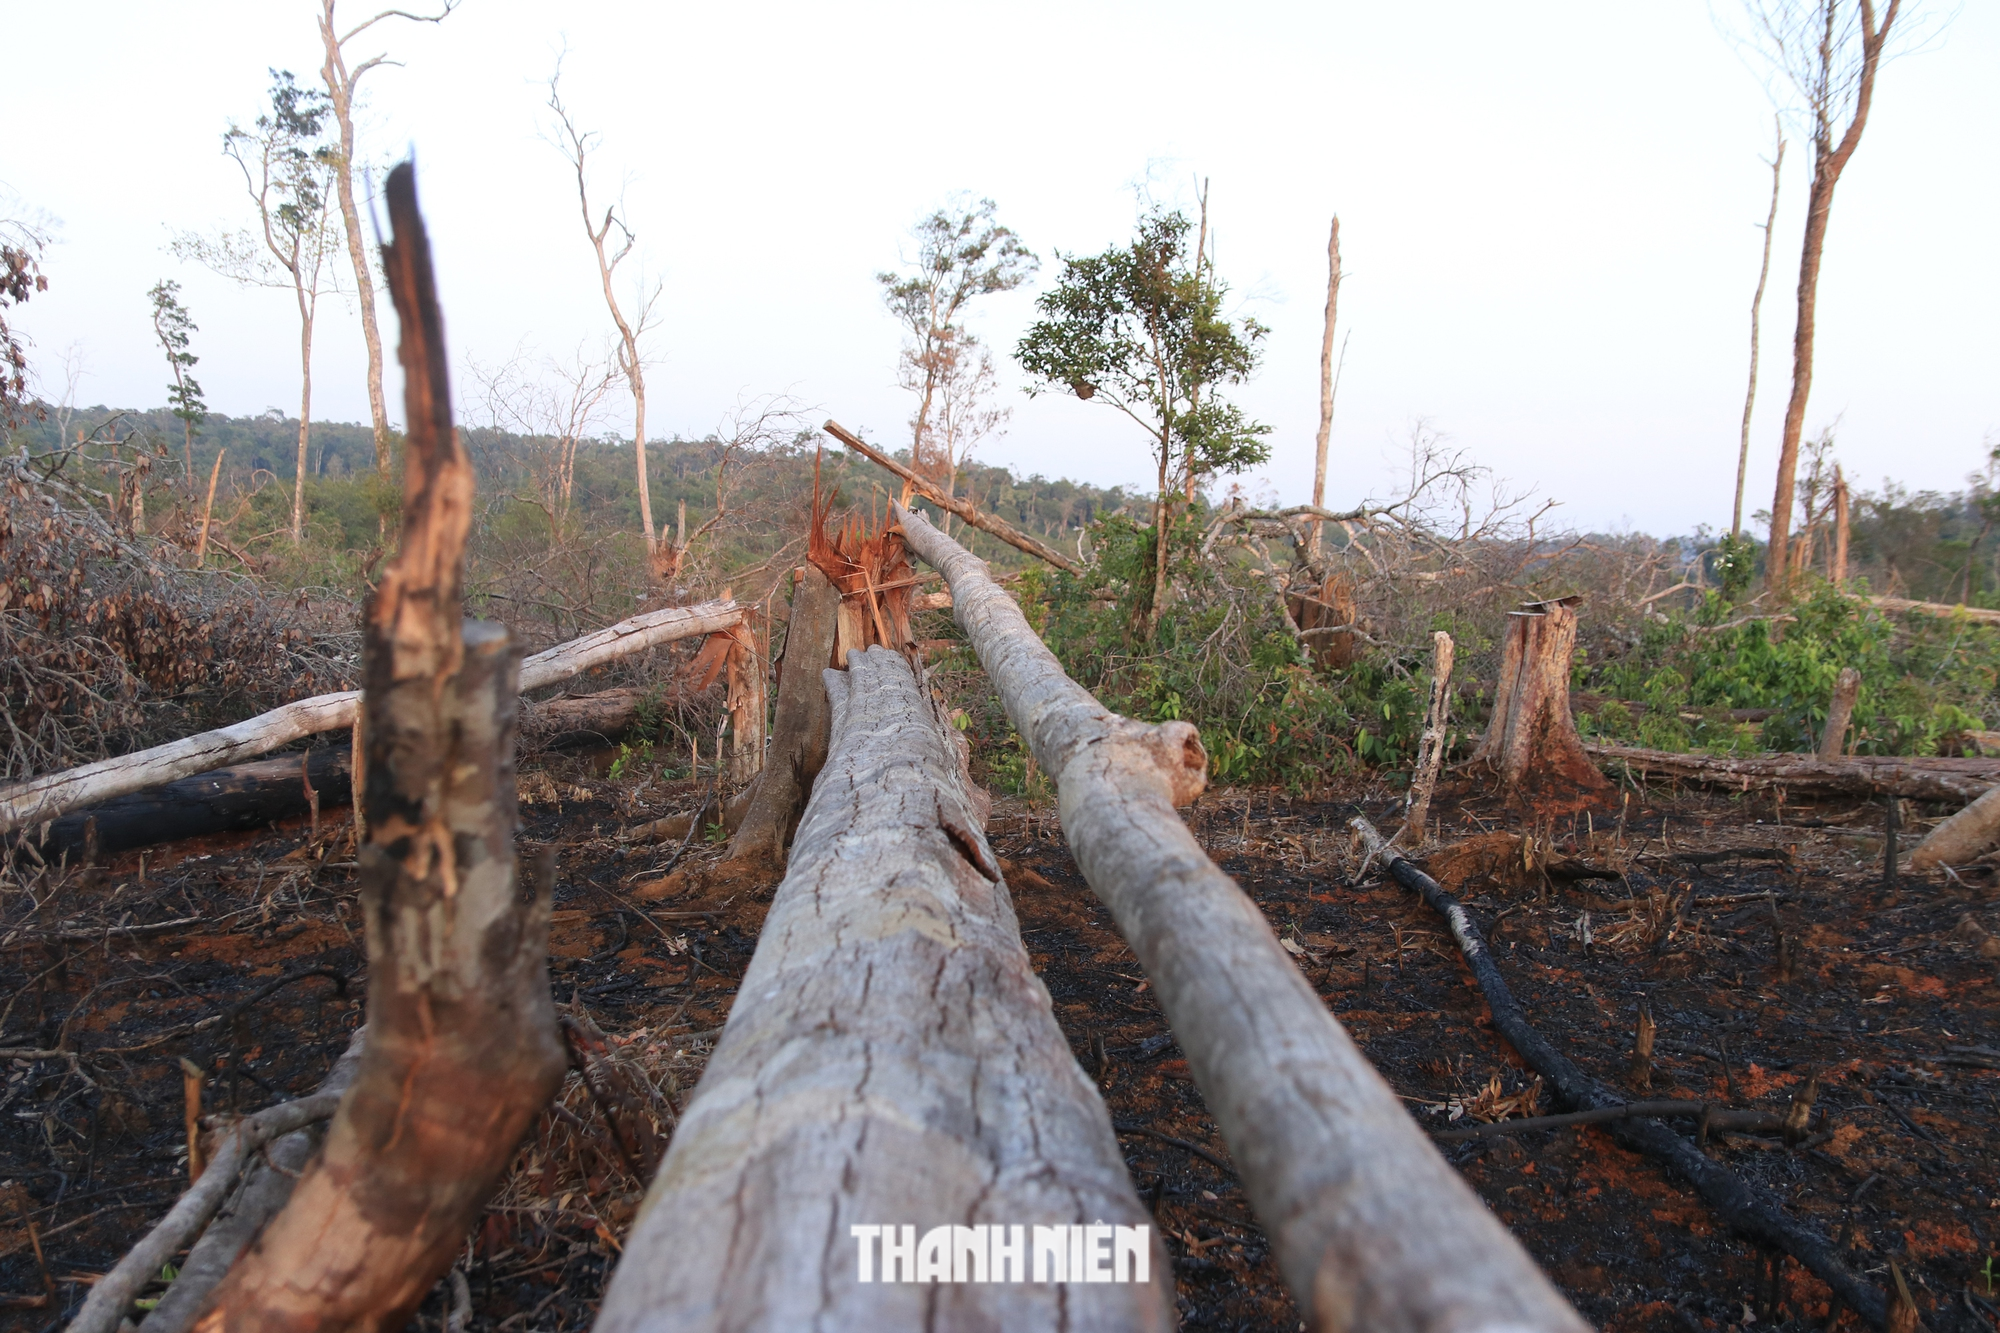 Lãnh đạo Đắk Nông kiểm tra khu vực chặt phá, đốt rừng mà Thanh Niên phản ánh - Ảnh 2.